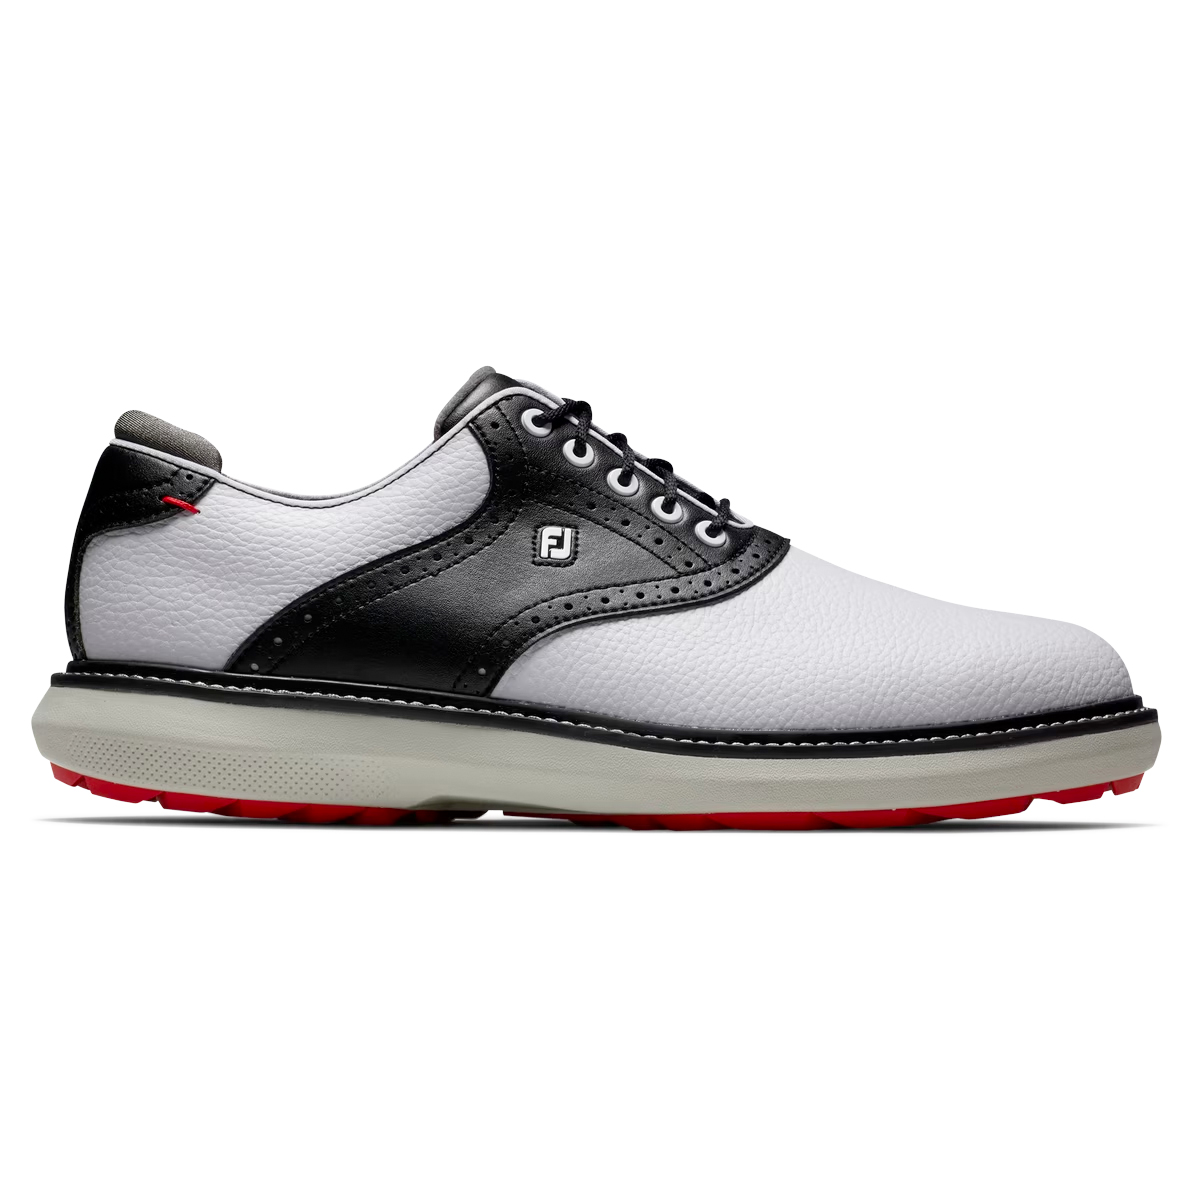 FootJoy Traditions SL 23 Mens Golf Shoes  - White/Black